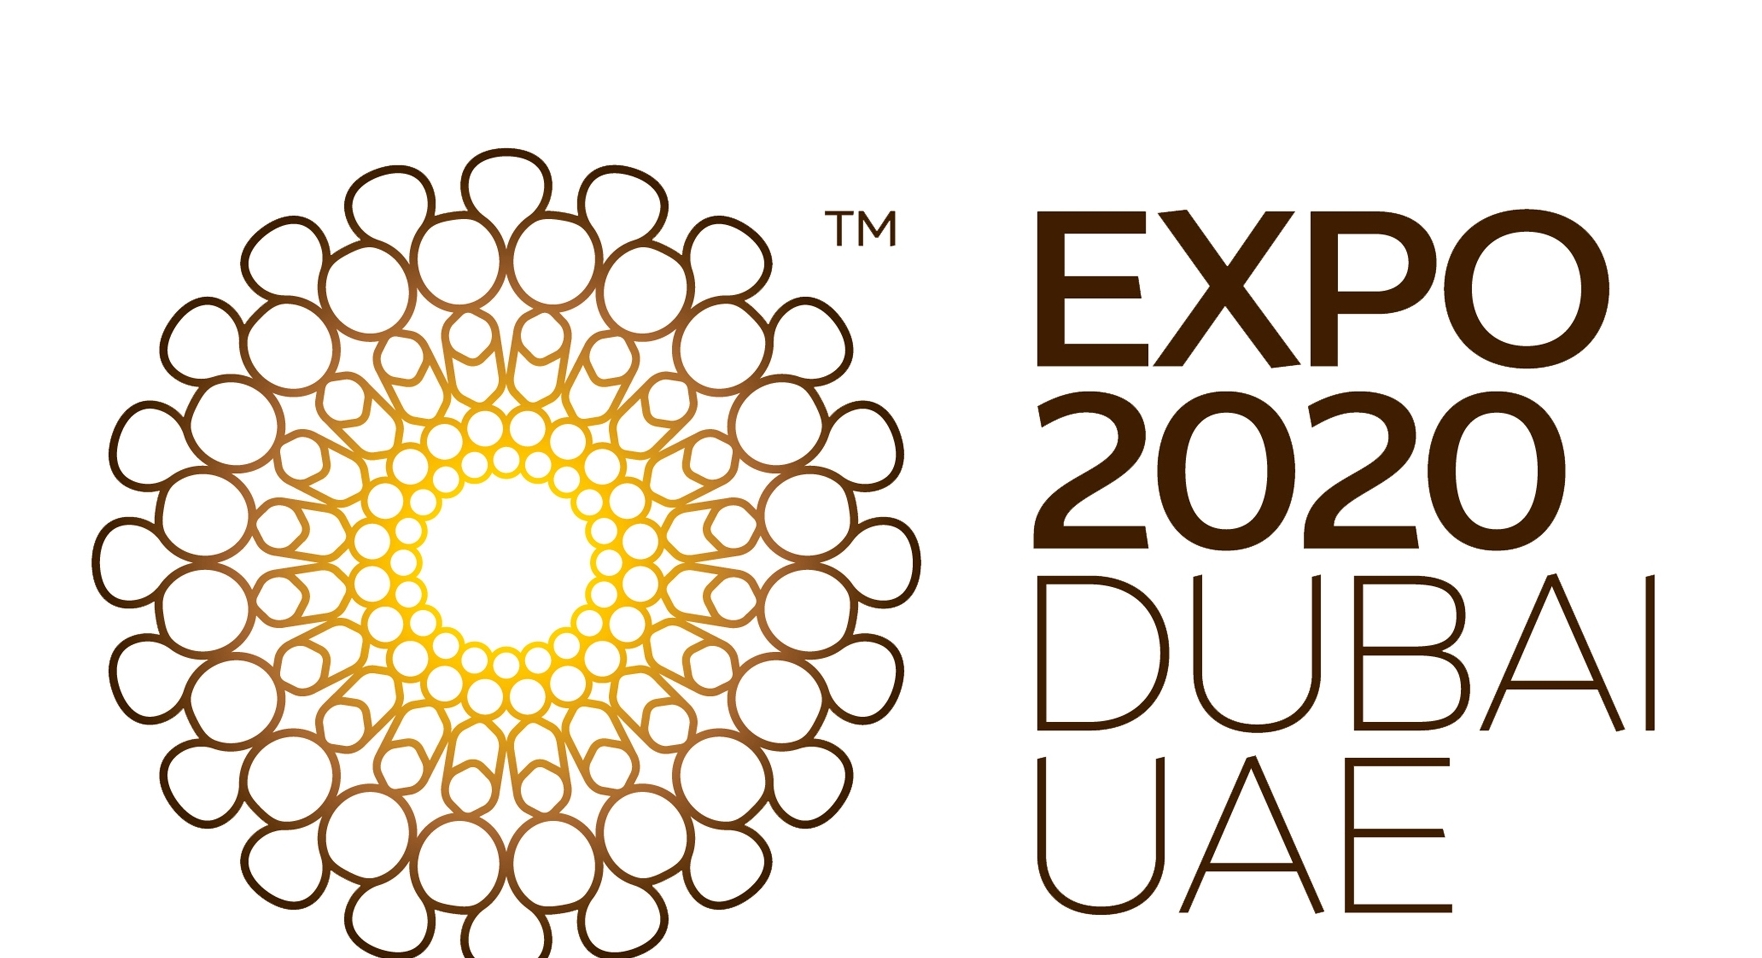 O derradeiro guia da Expo 2020 Dubai